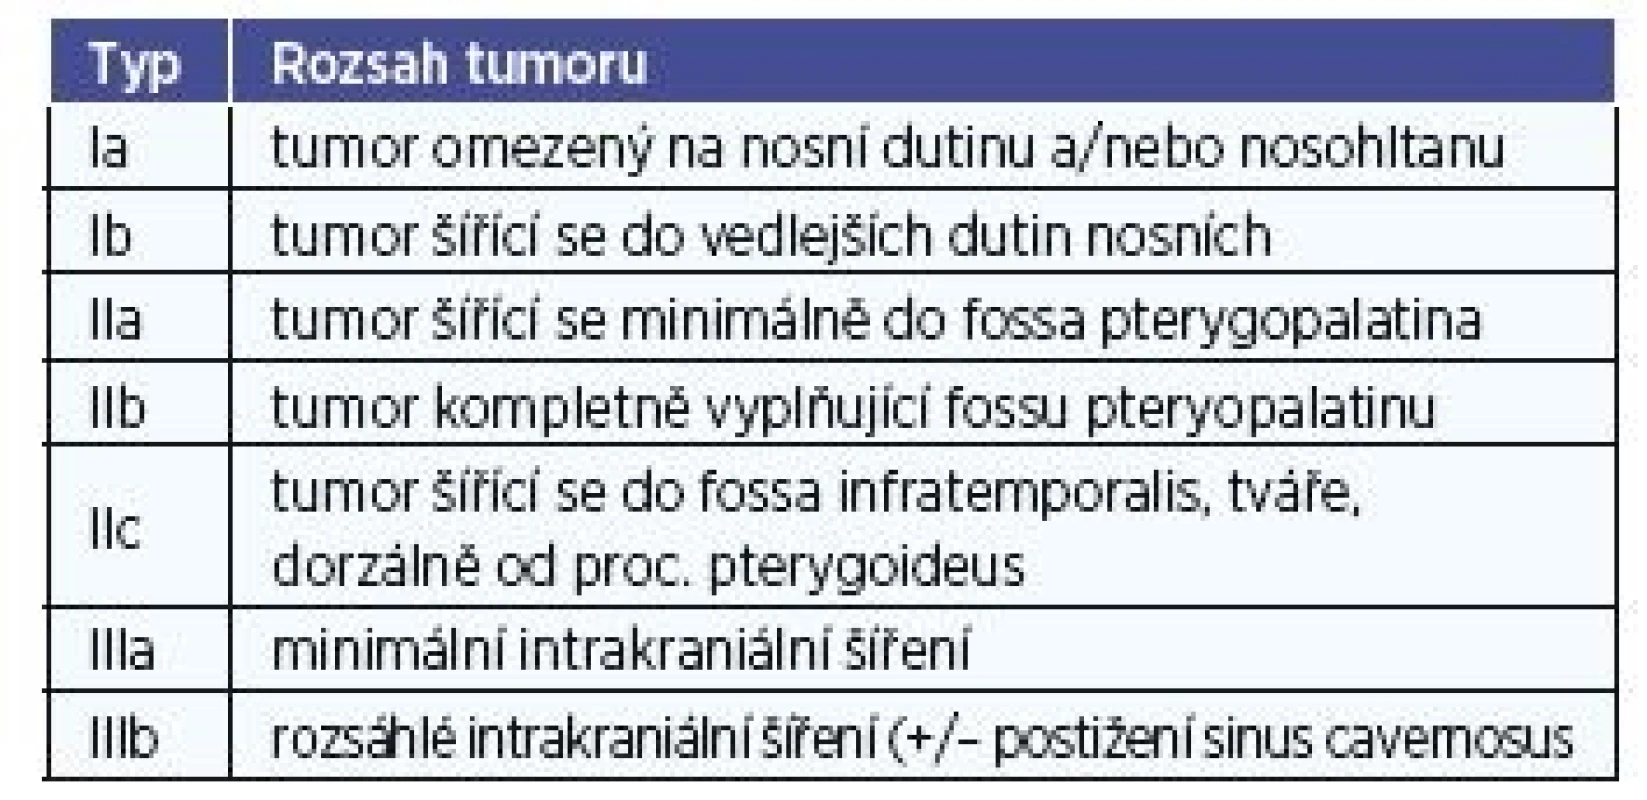 Klasifikace juvenilního angiofibromu dle Radkowského.